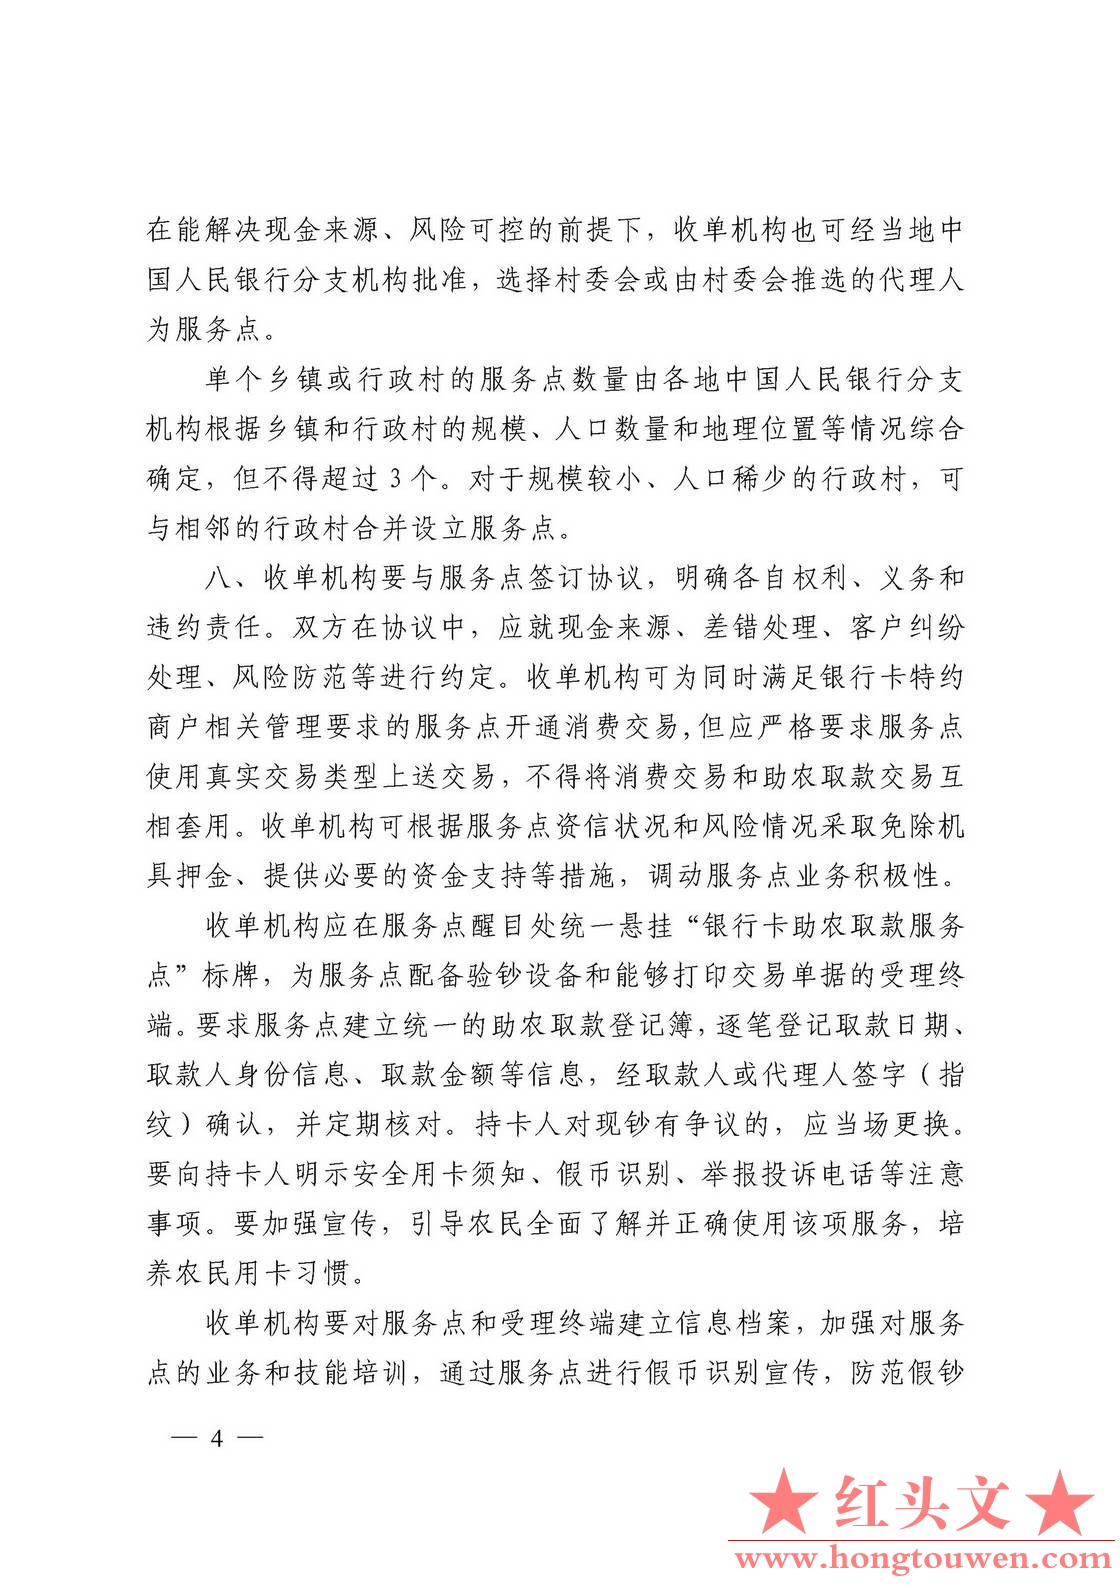 银发[2011]177号-中国人民银行关于推广银行卡助农取款服务的通知_页面_04.jpg.jpg